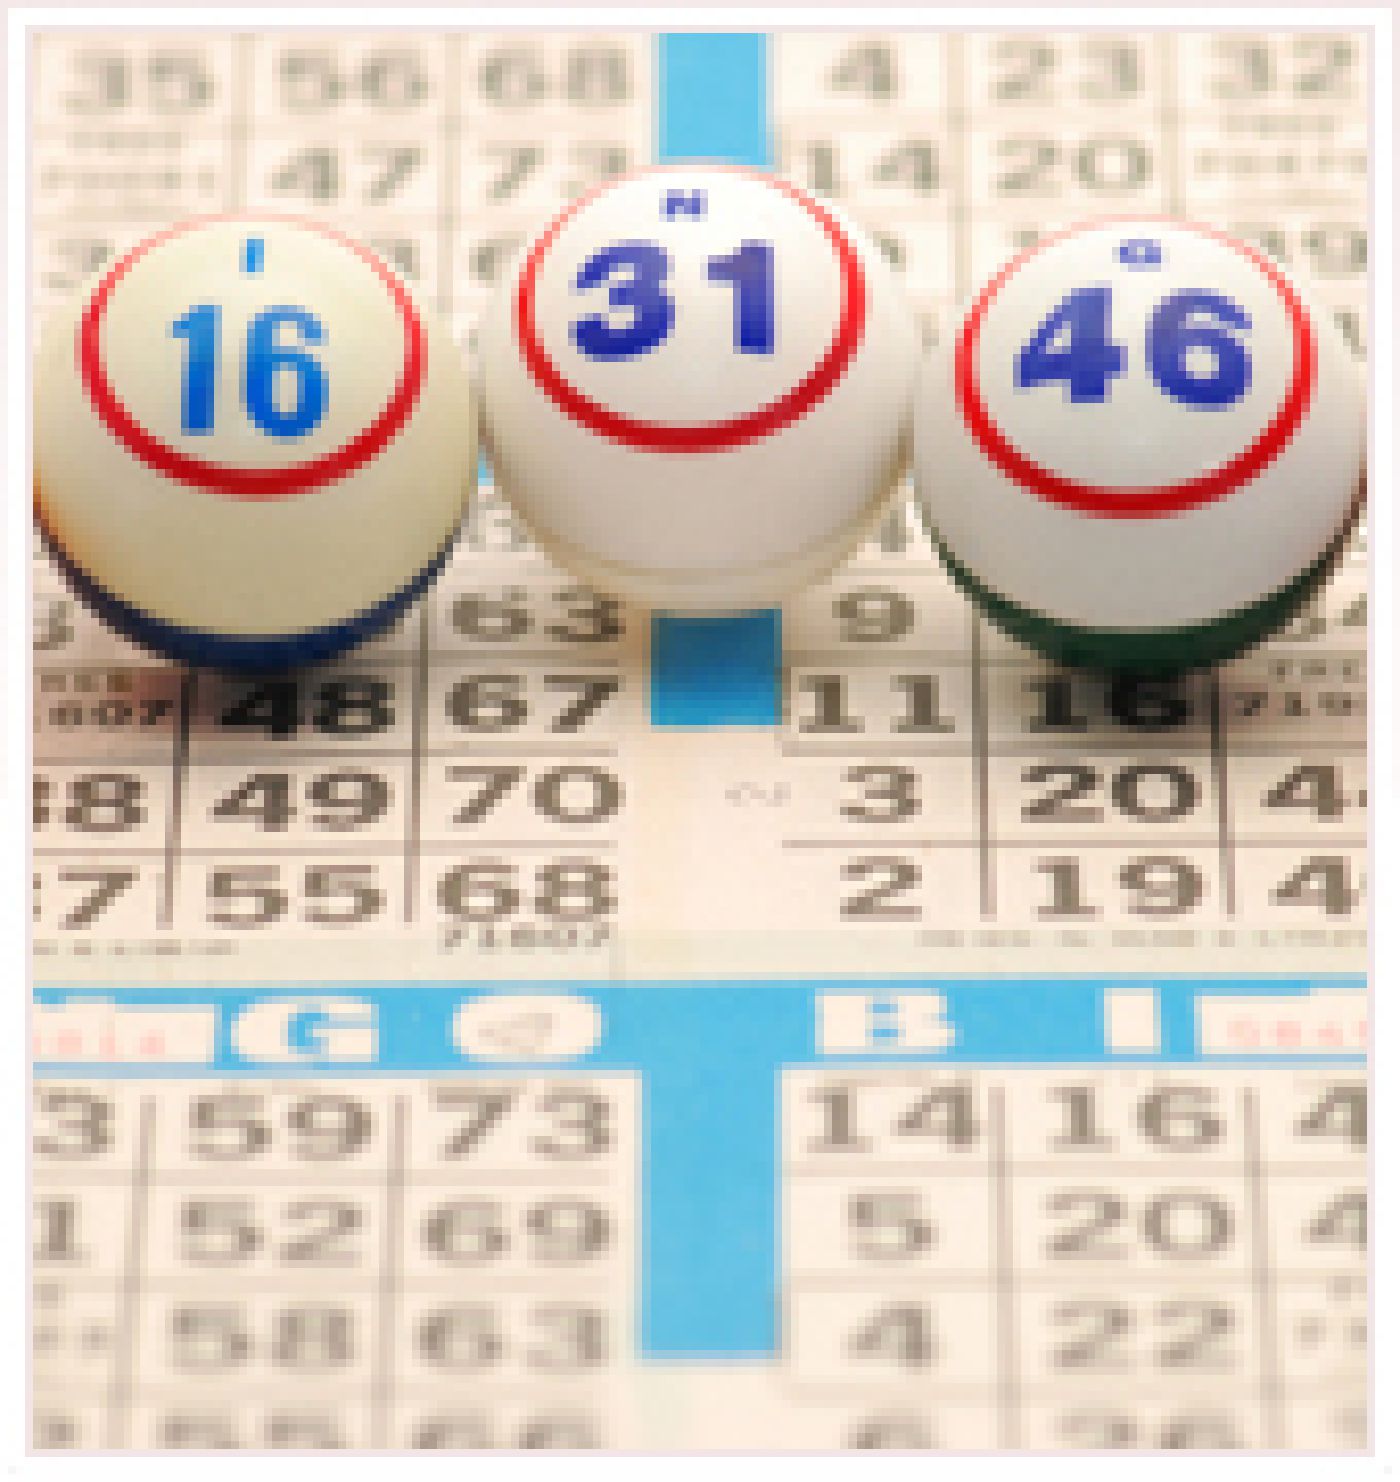 bingo bet online